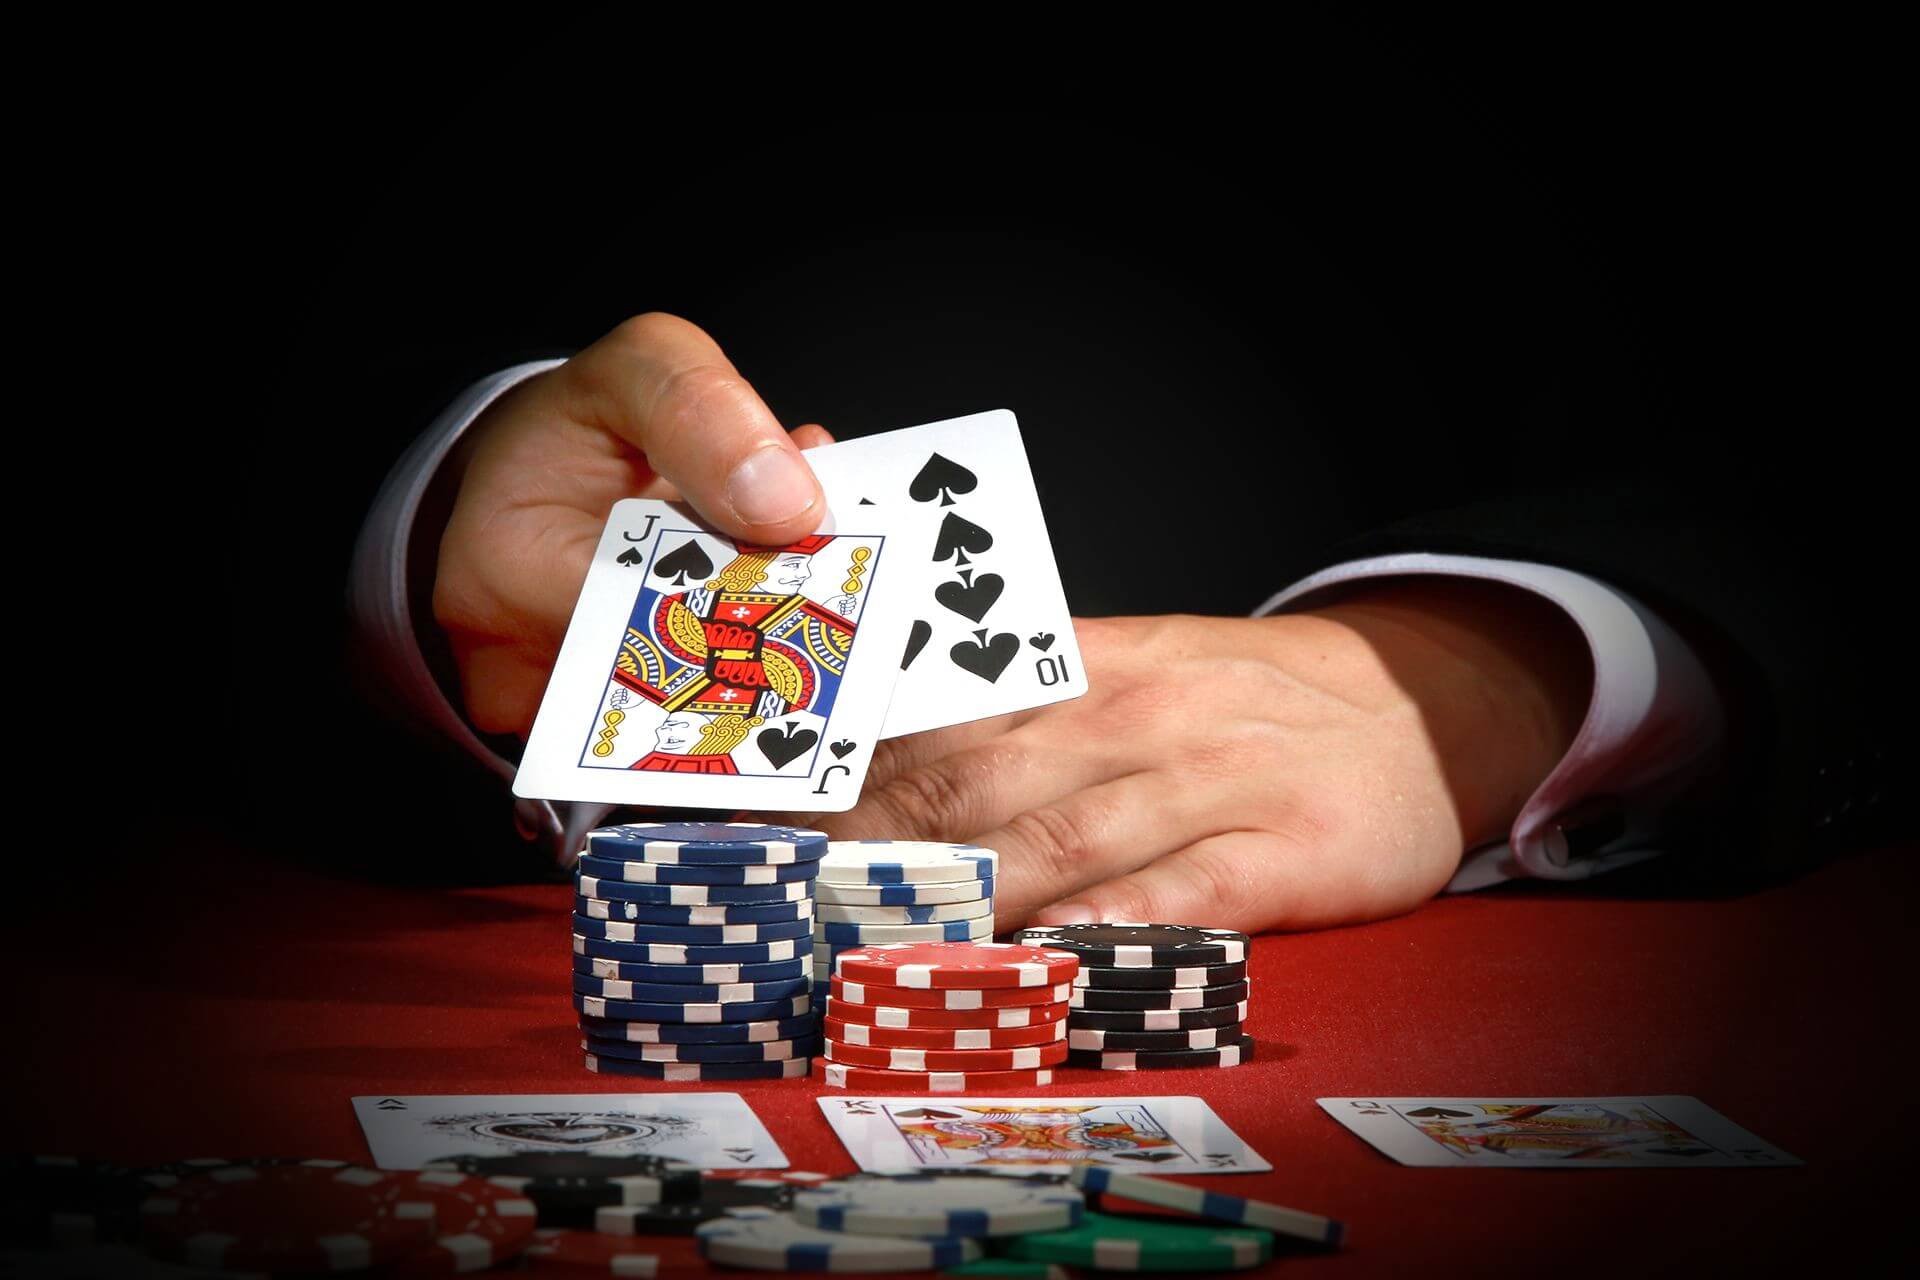 Casino card game. Покер. Азартная карточная игра. Азартные игры Покер казино. Карточки в азартных играх.